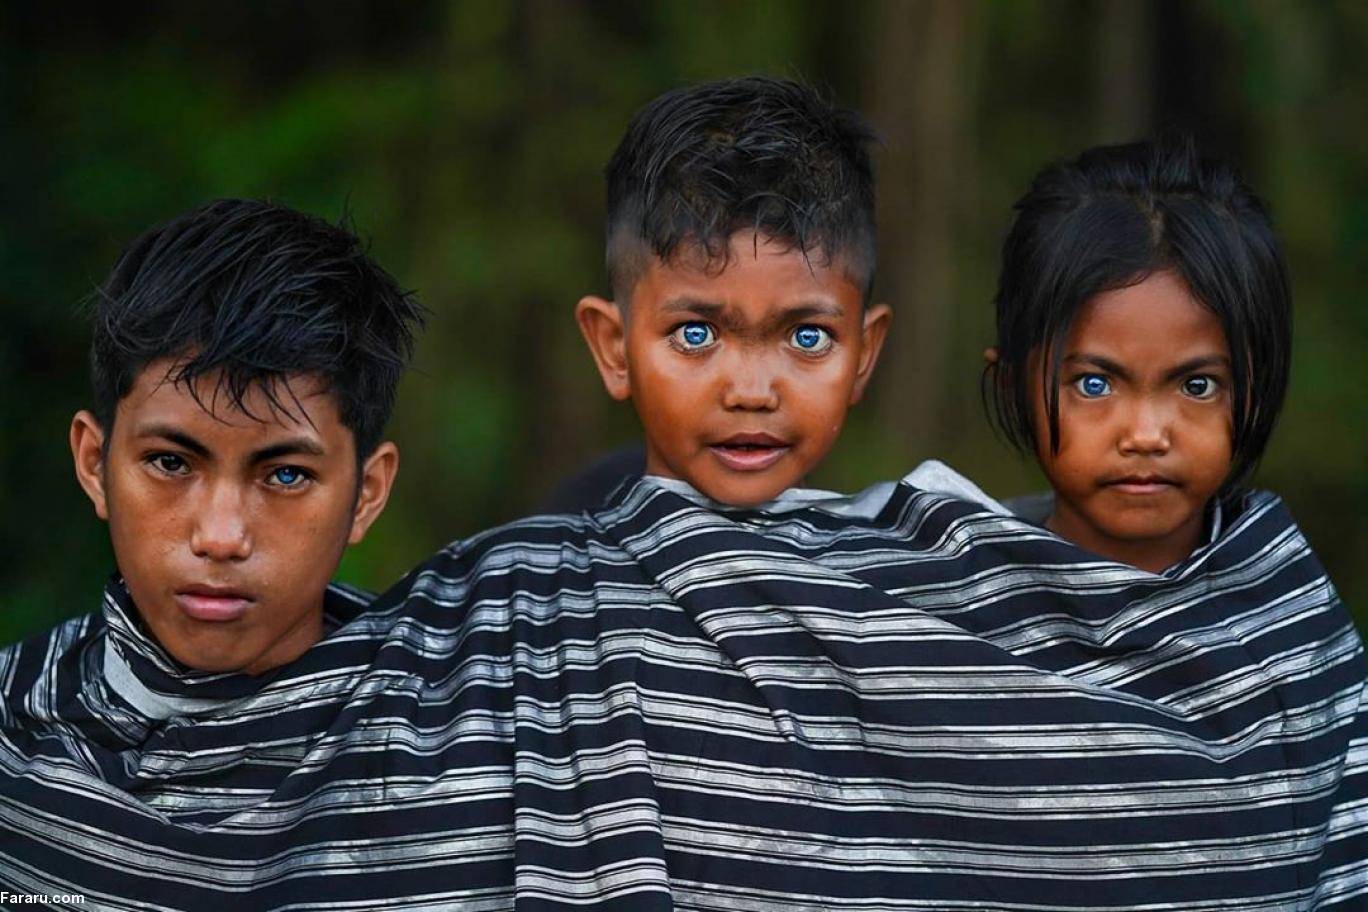 Самый необычный народ. Варденбурга синдром Ваарденбурга. Племя в Индонезии с синими глазами бутунг. Племя бутон на острове бутунг Индонезии.